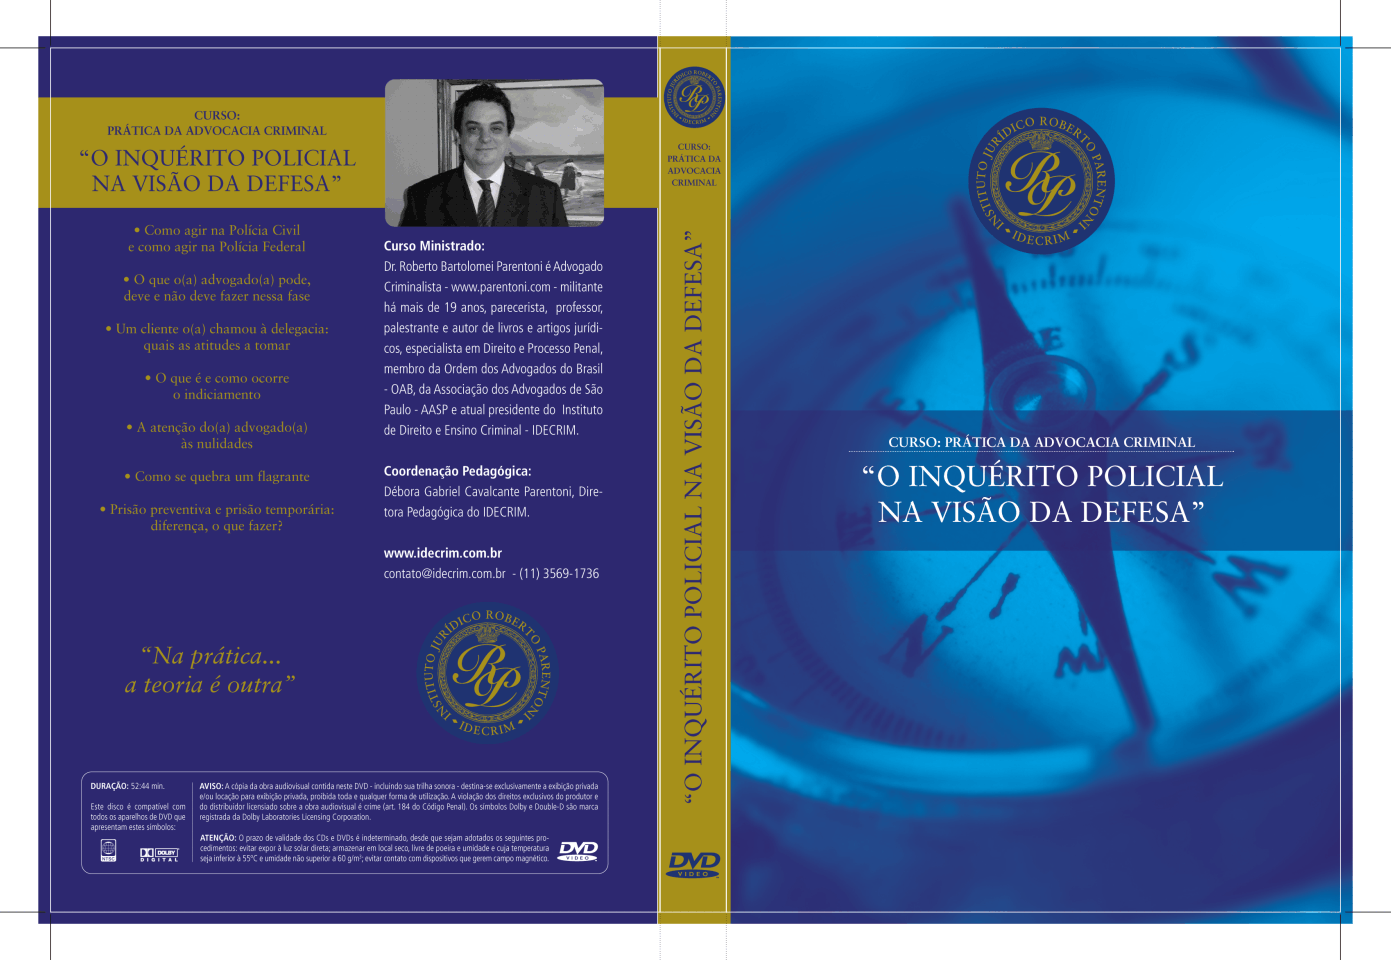 Parentoni - Prática da Advocacia Criminal - O Inquérito Policial na visão da defesa - Capa DVD